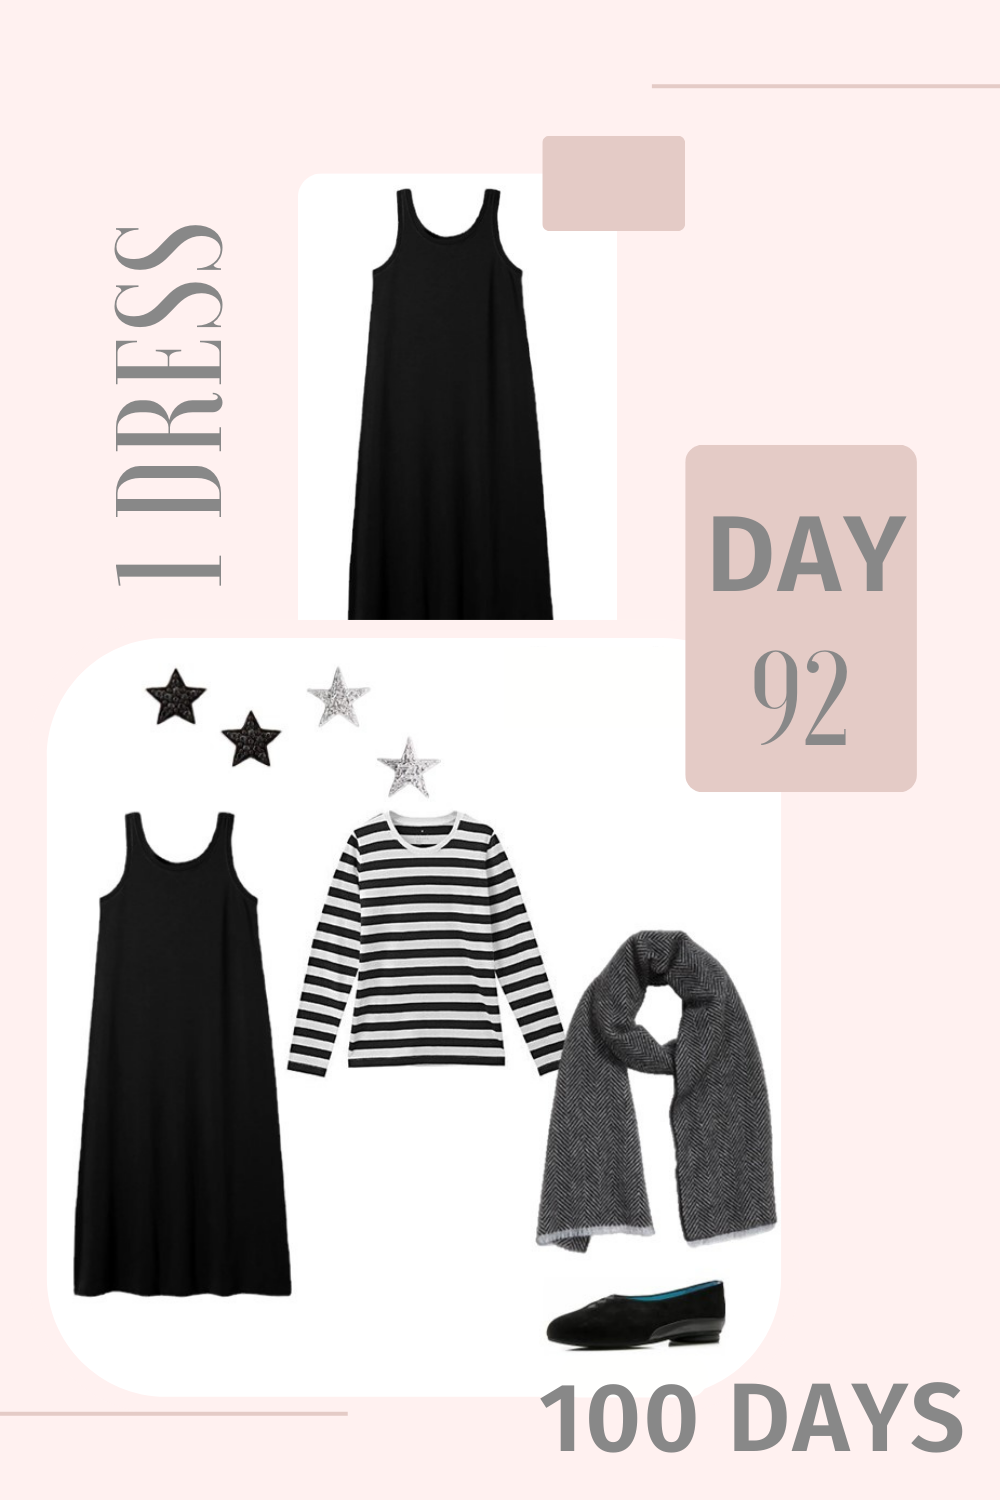 1 Dress 100 Days - Day 92